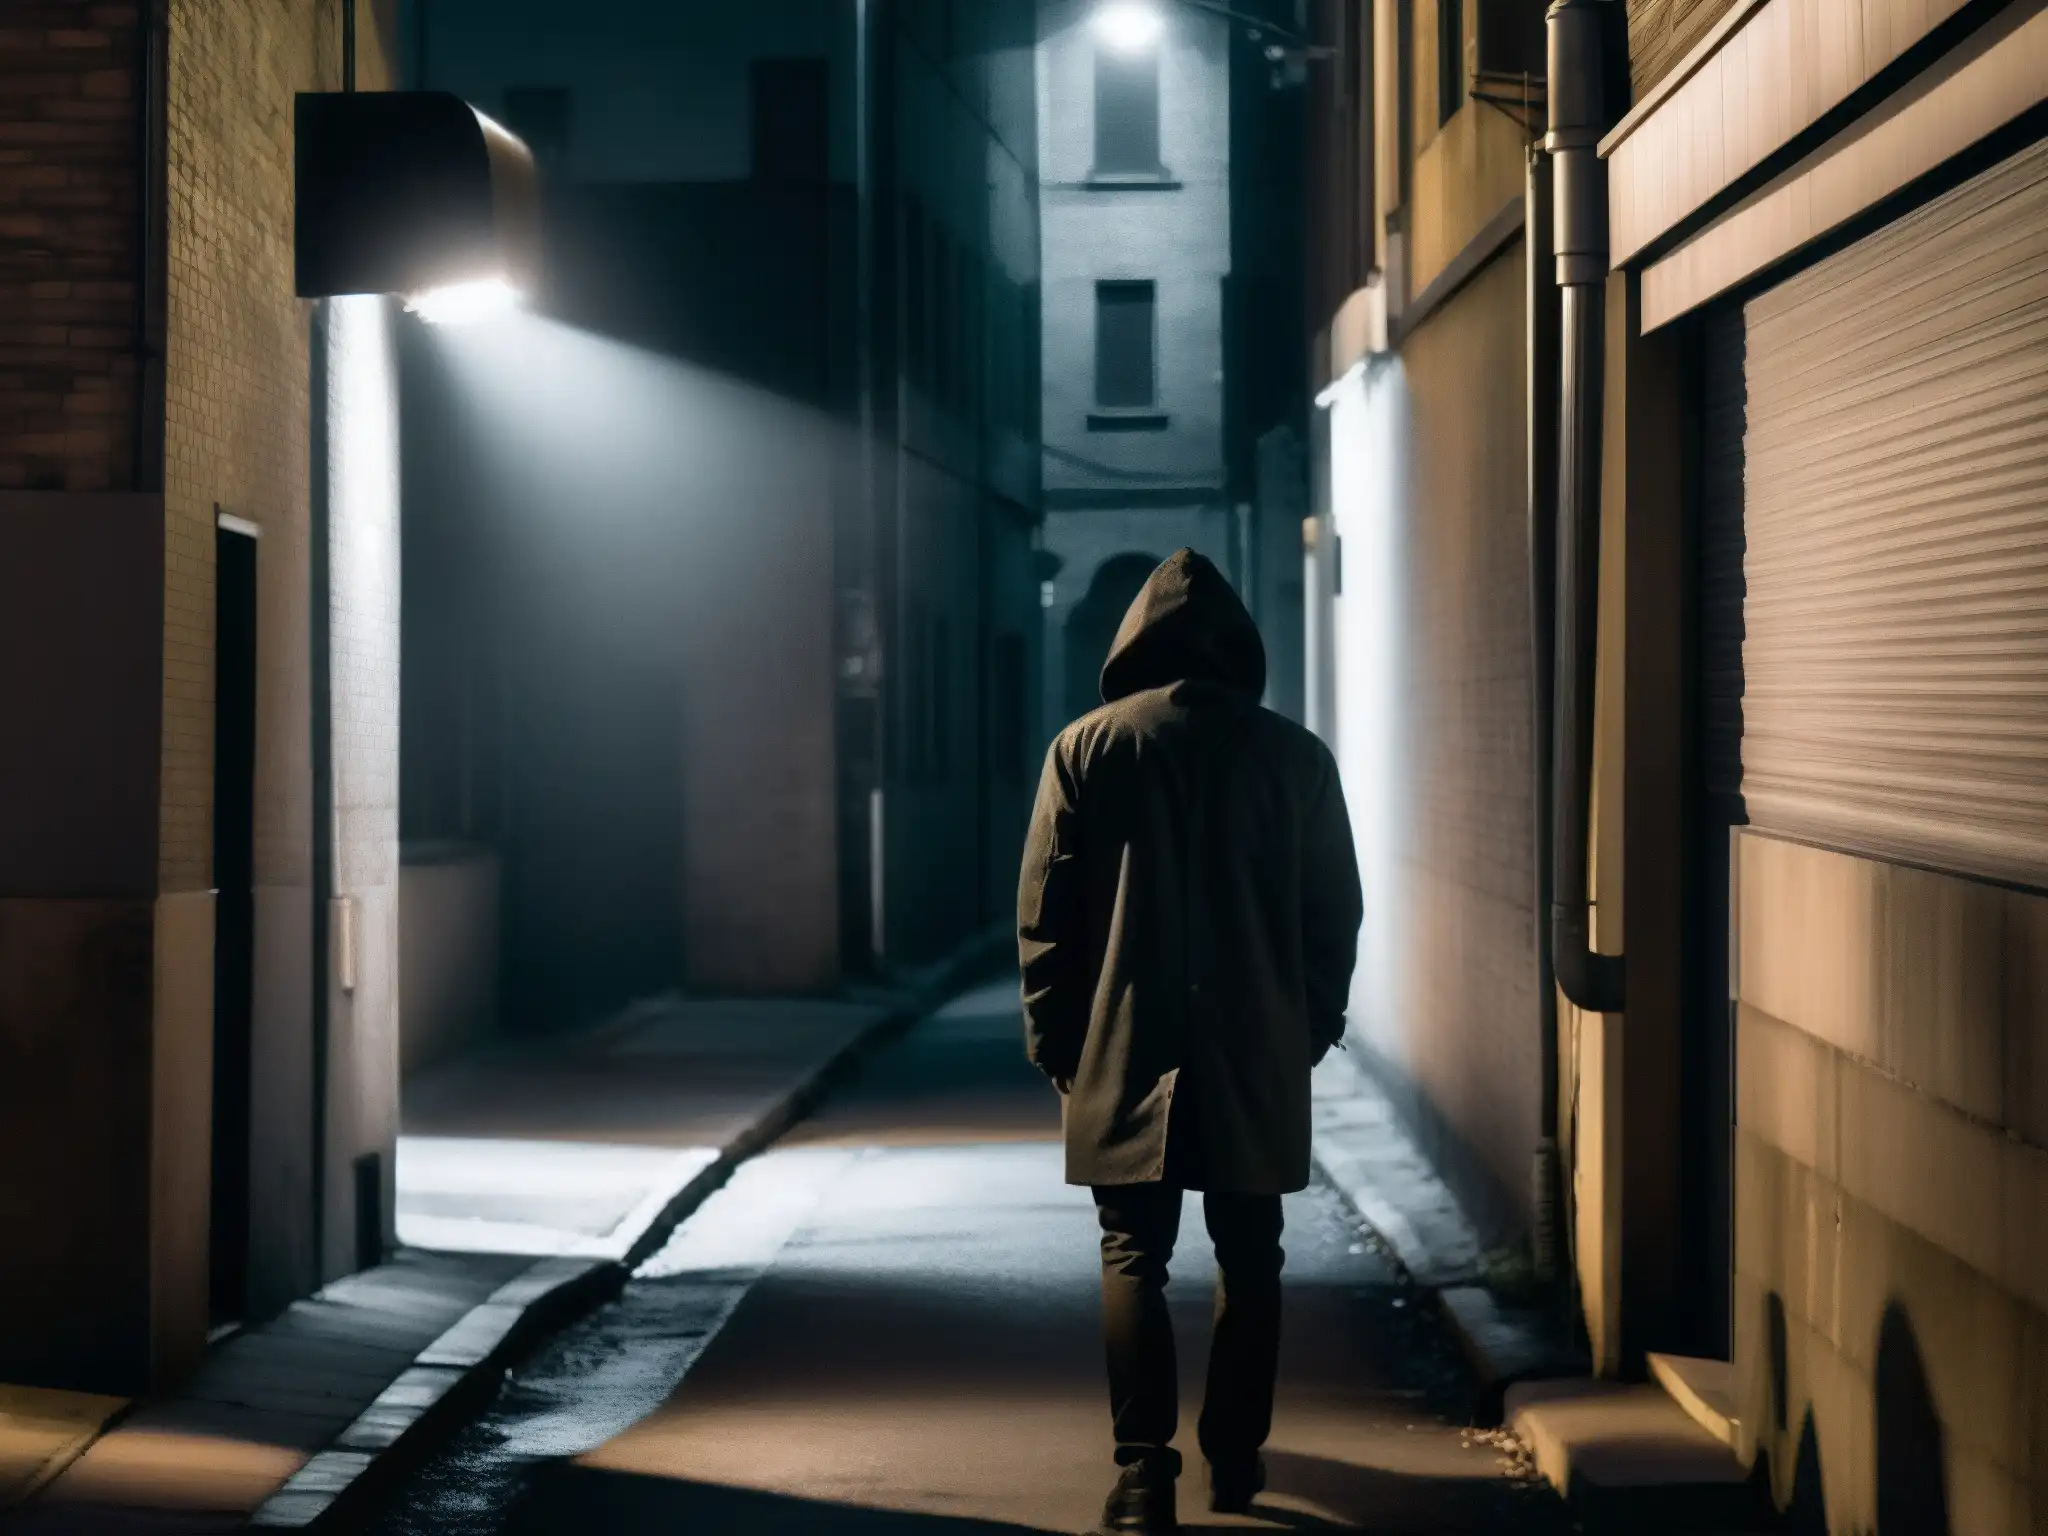 Alley desolado de la ciudad de noche, con una luz de calle parpadeante creando sombras inquietantes